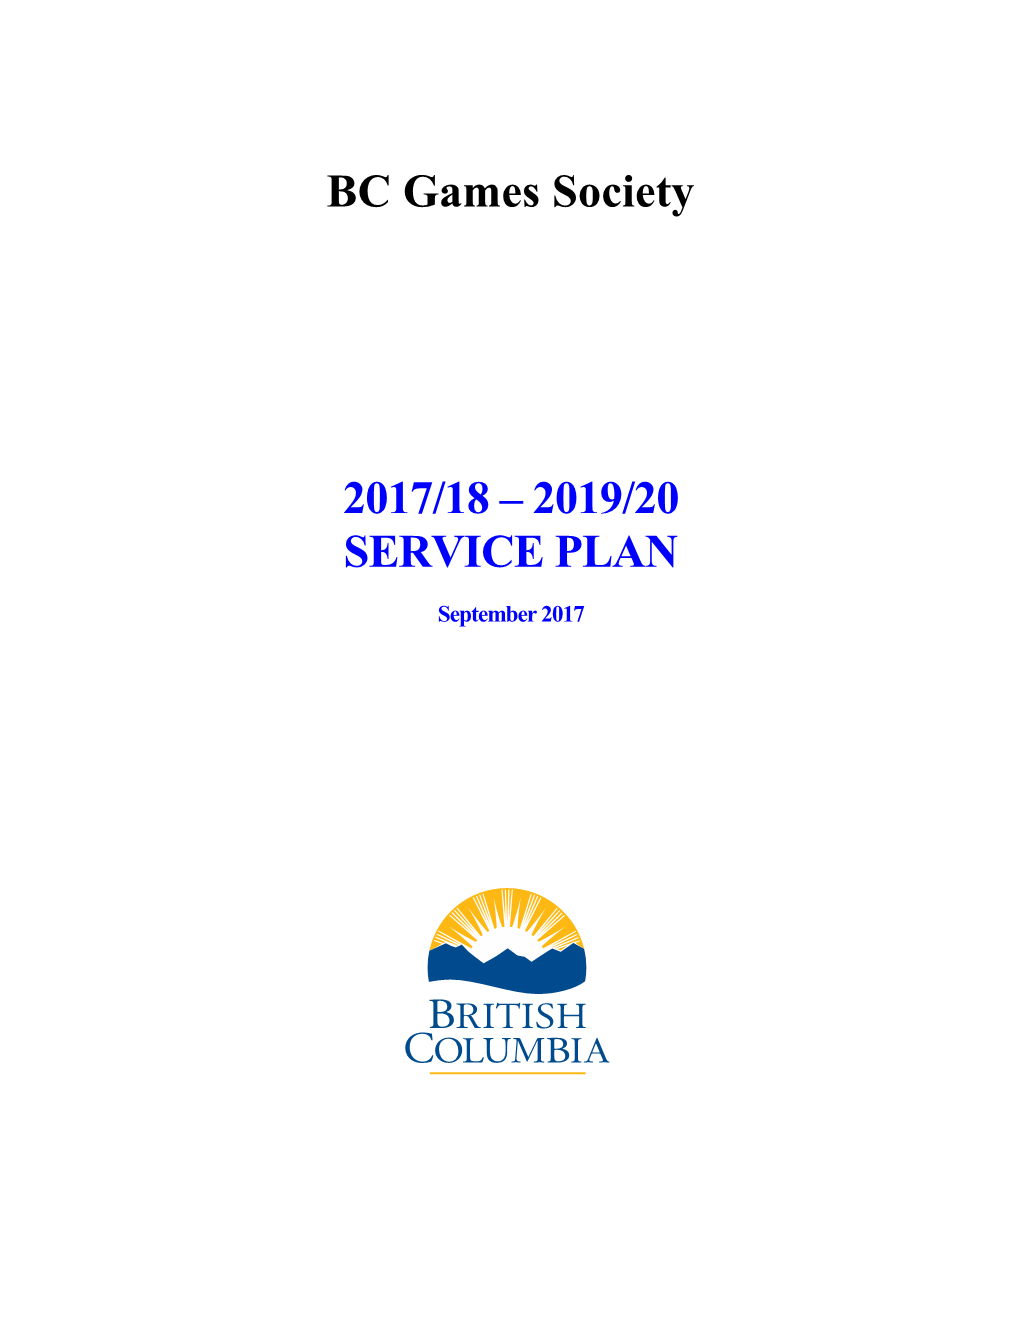 BC Games Society 2017/18